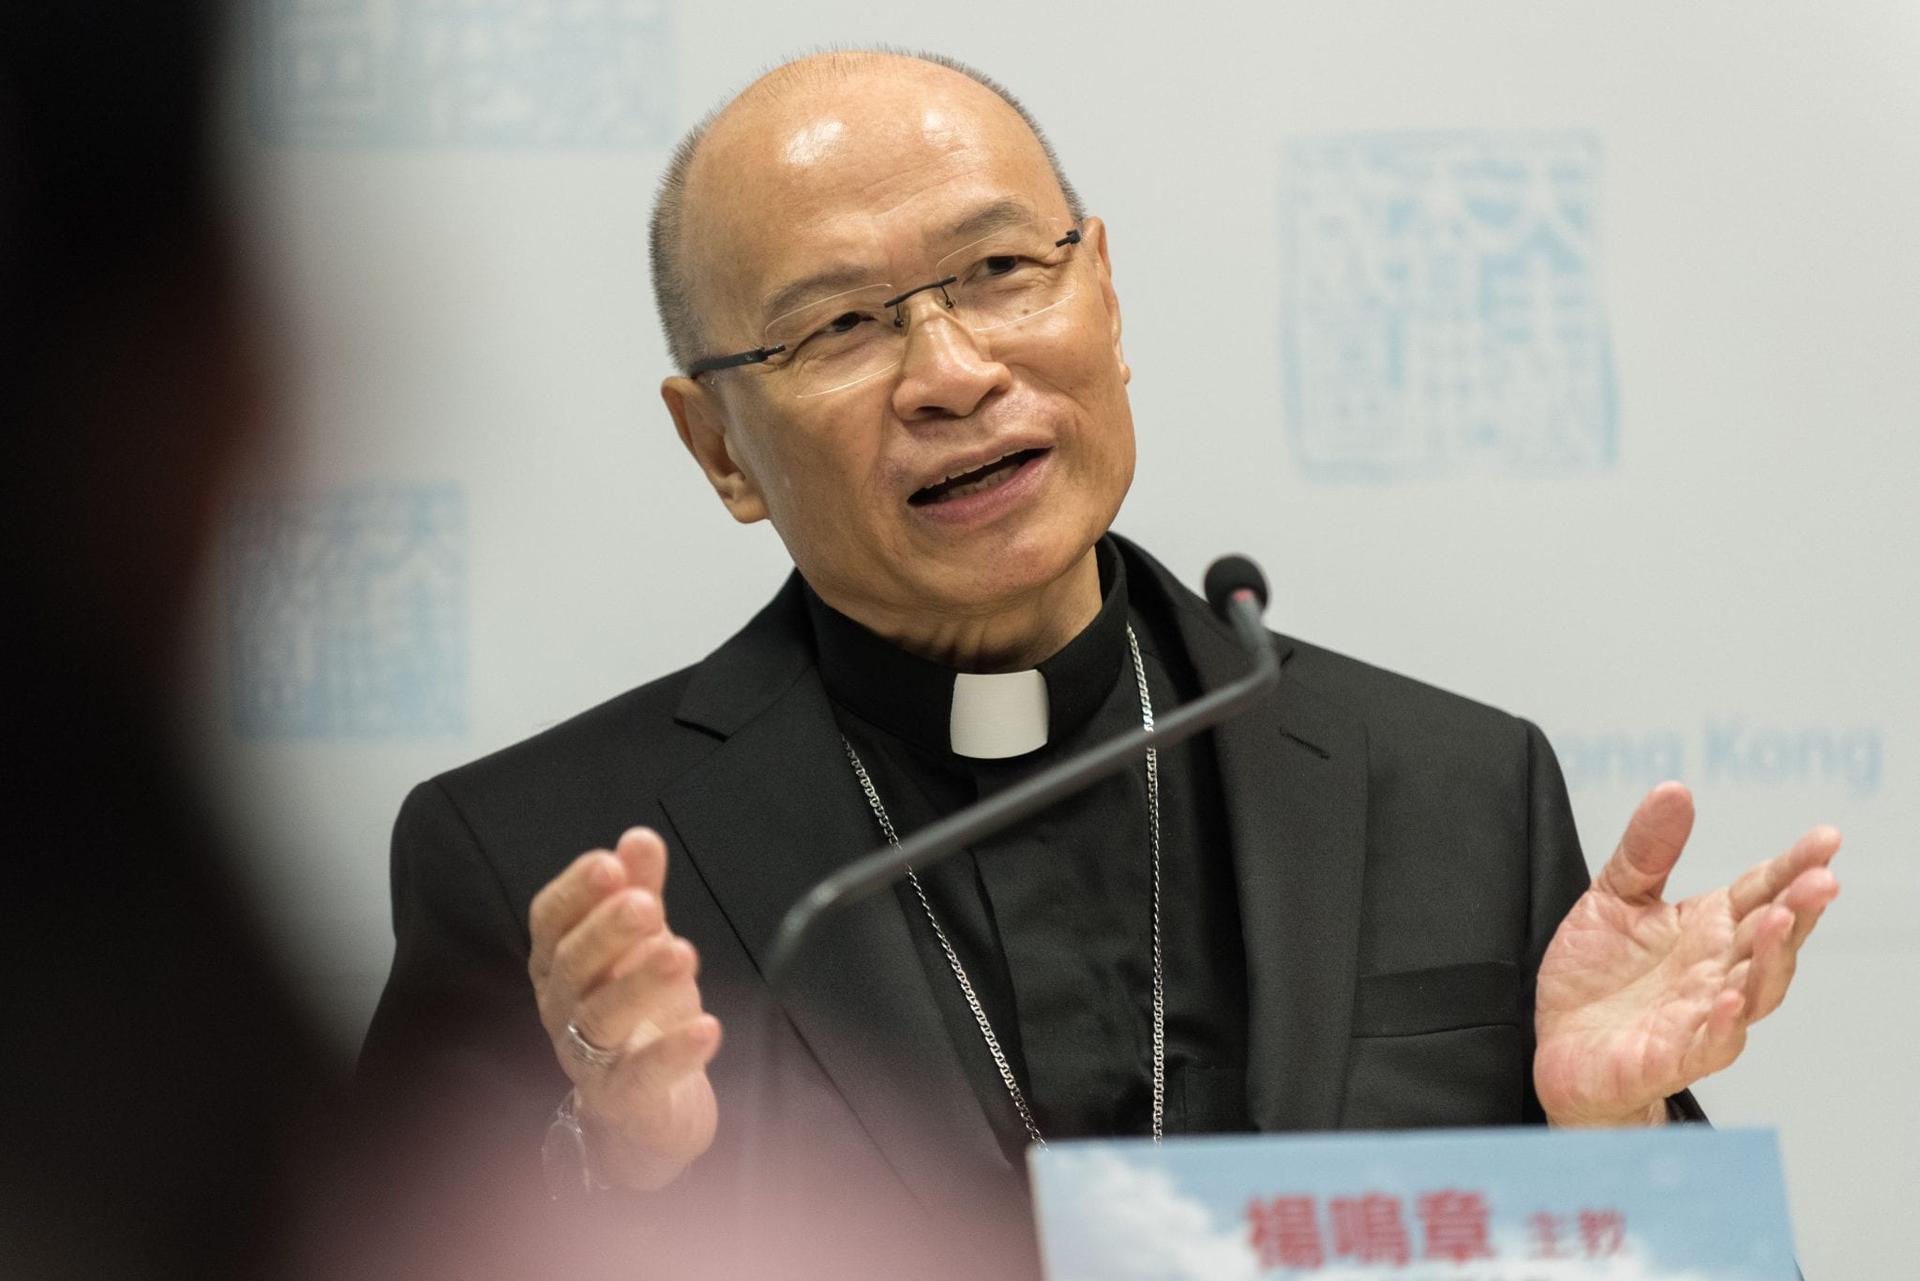 Hong Kong bishop emphasizes pastoral over political concerns